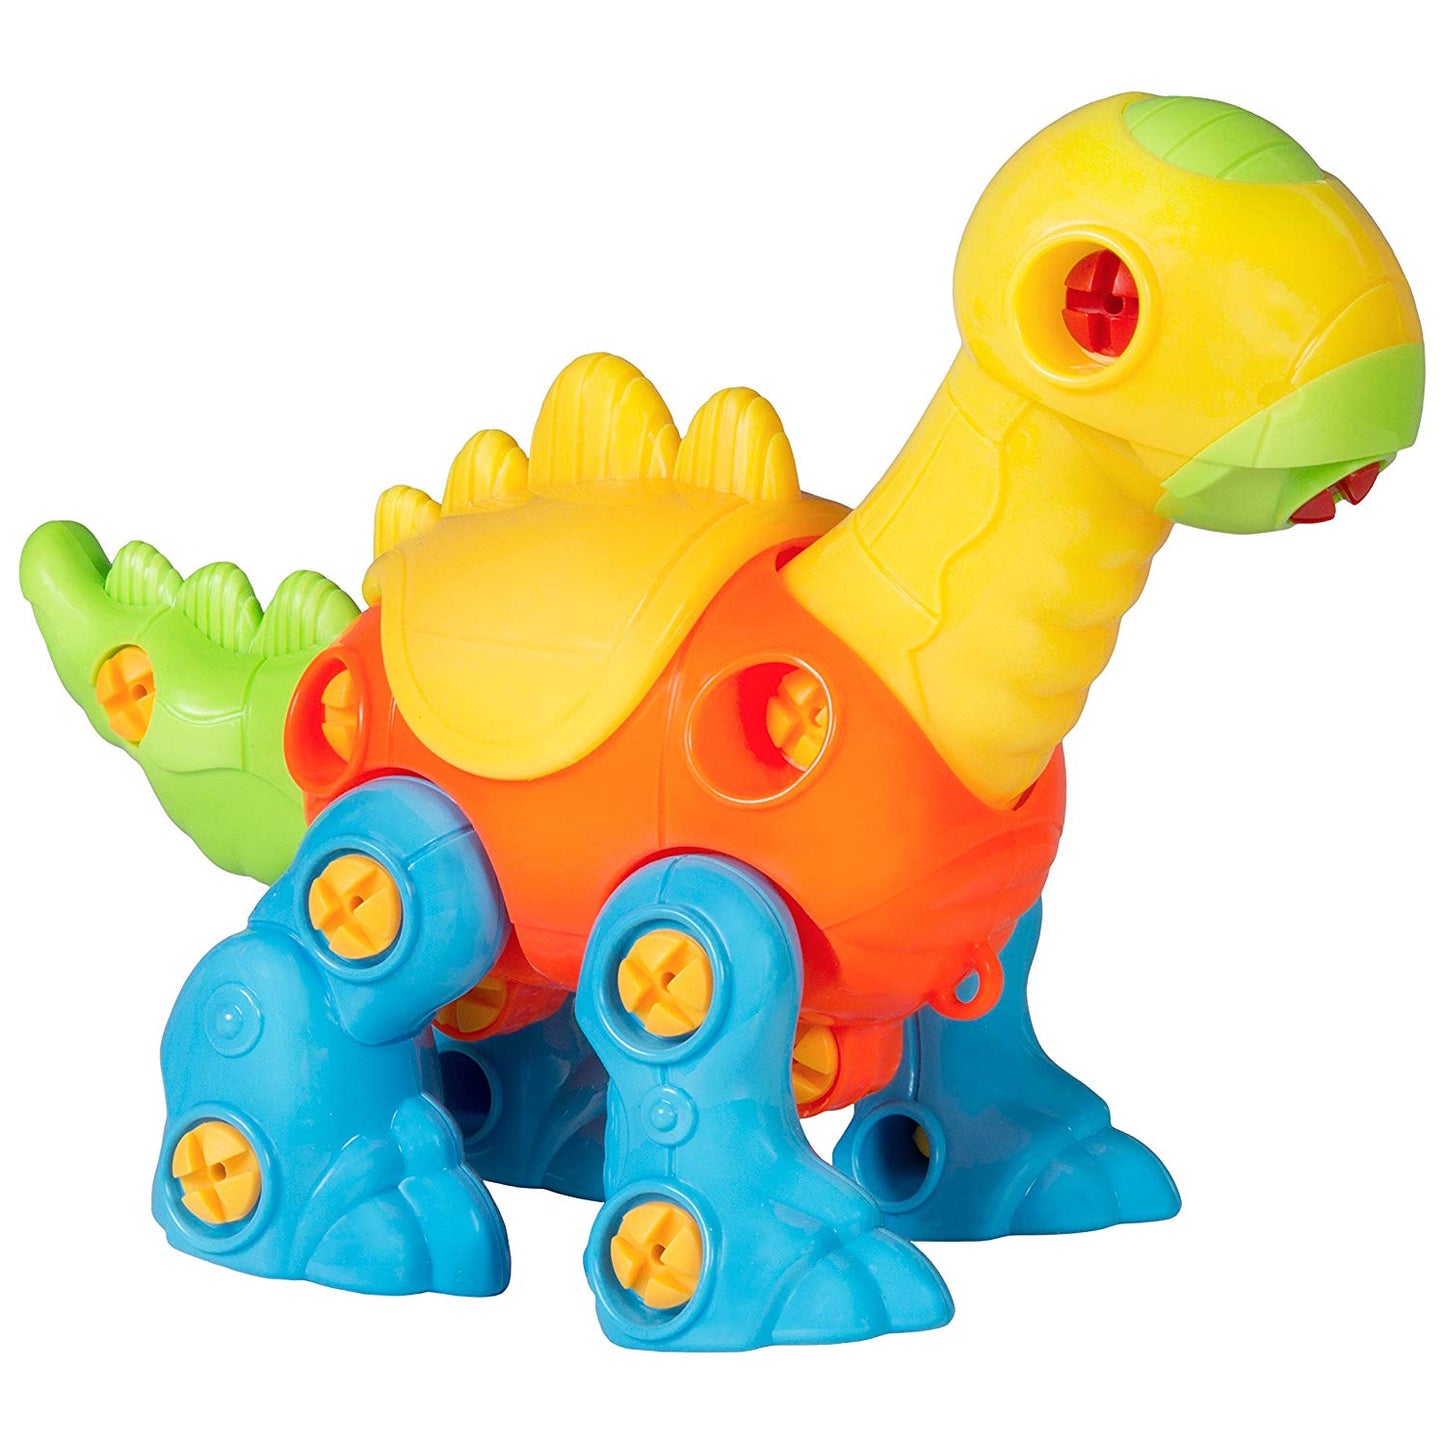 heya 106-Piece Set of 3 Kids Take-Apart Dinosaurs Puzzle STEM Toy Playset w/ Tools